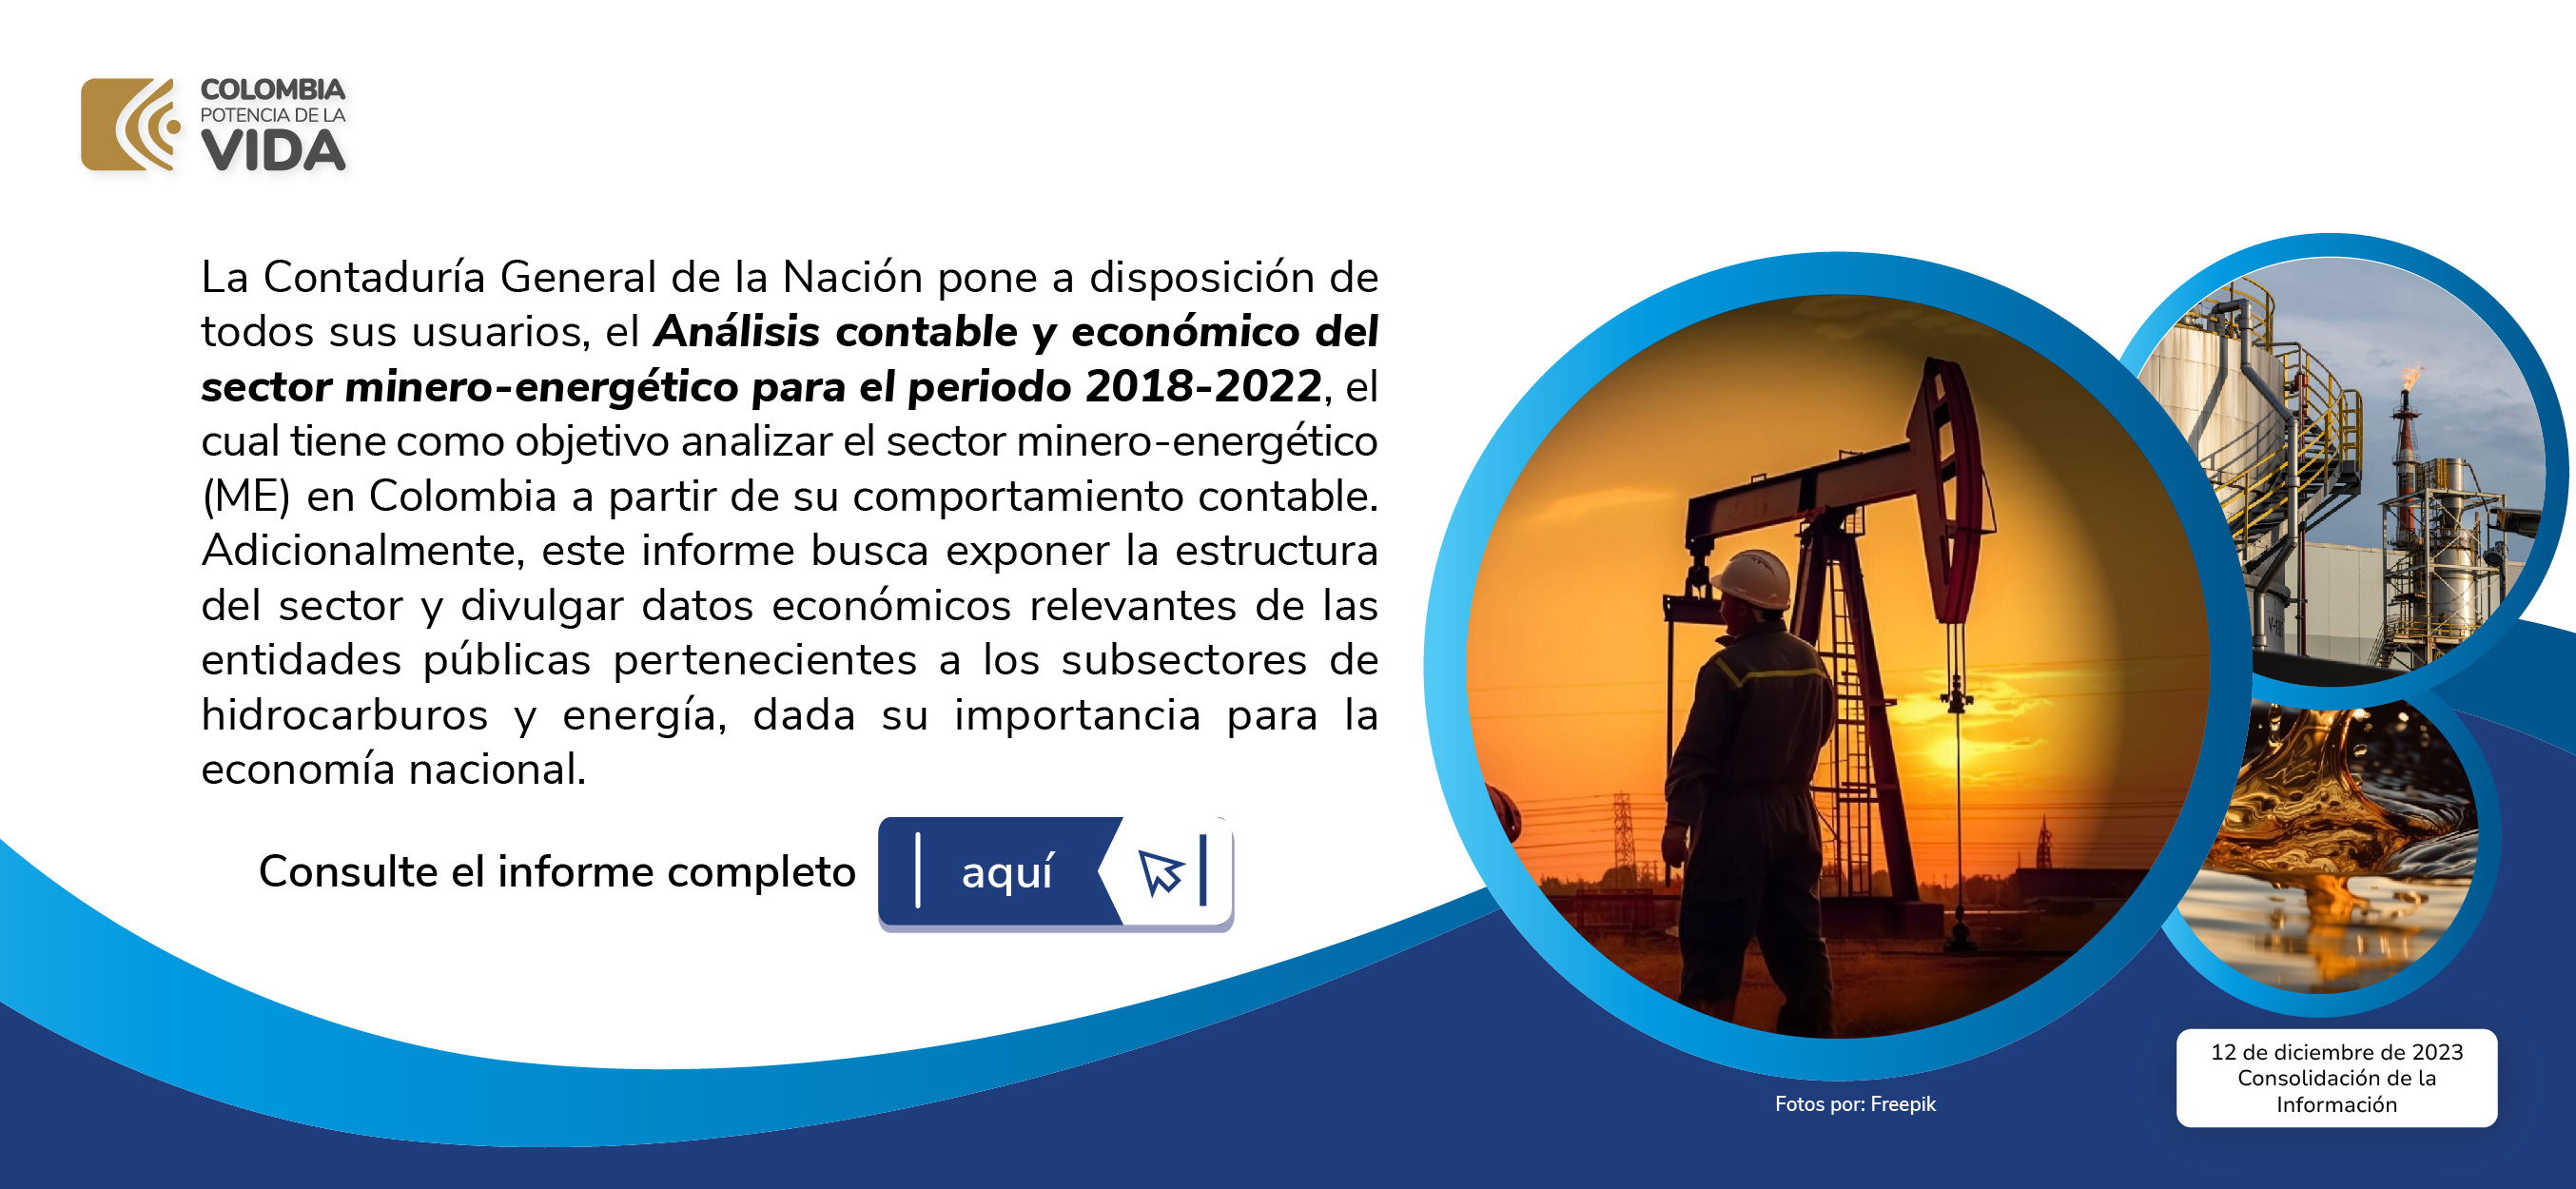 Análisis contable y económico del sector minero-energético para el periodo 2018-2022